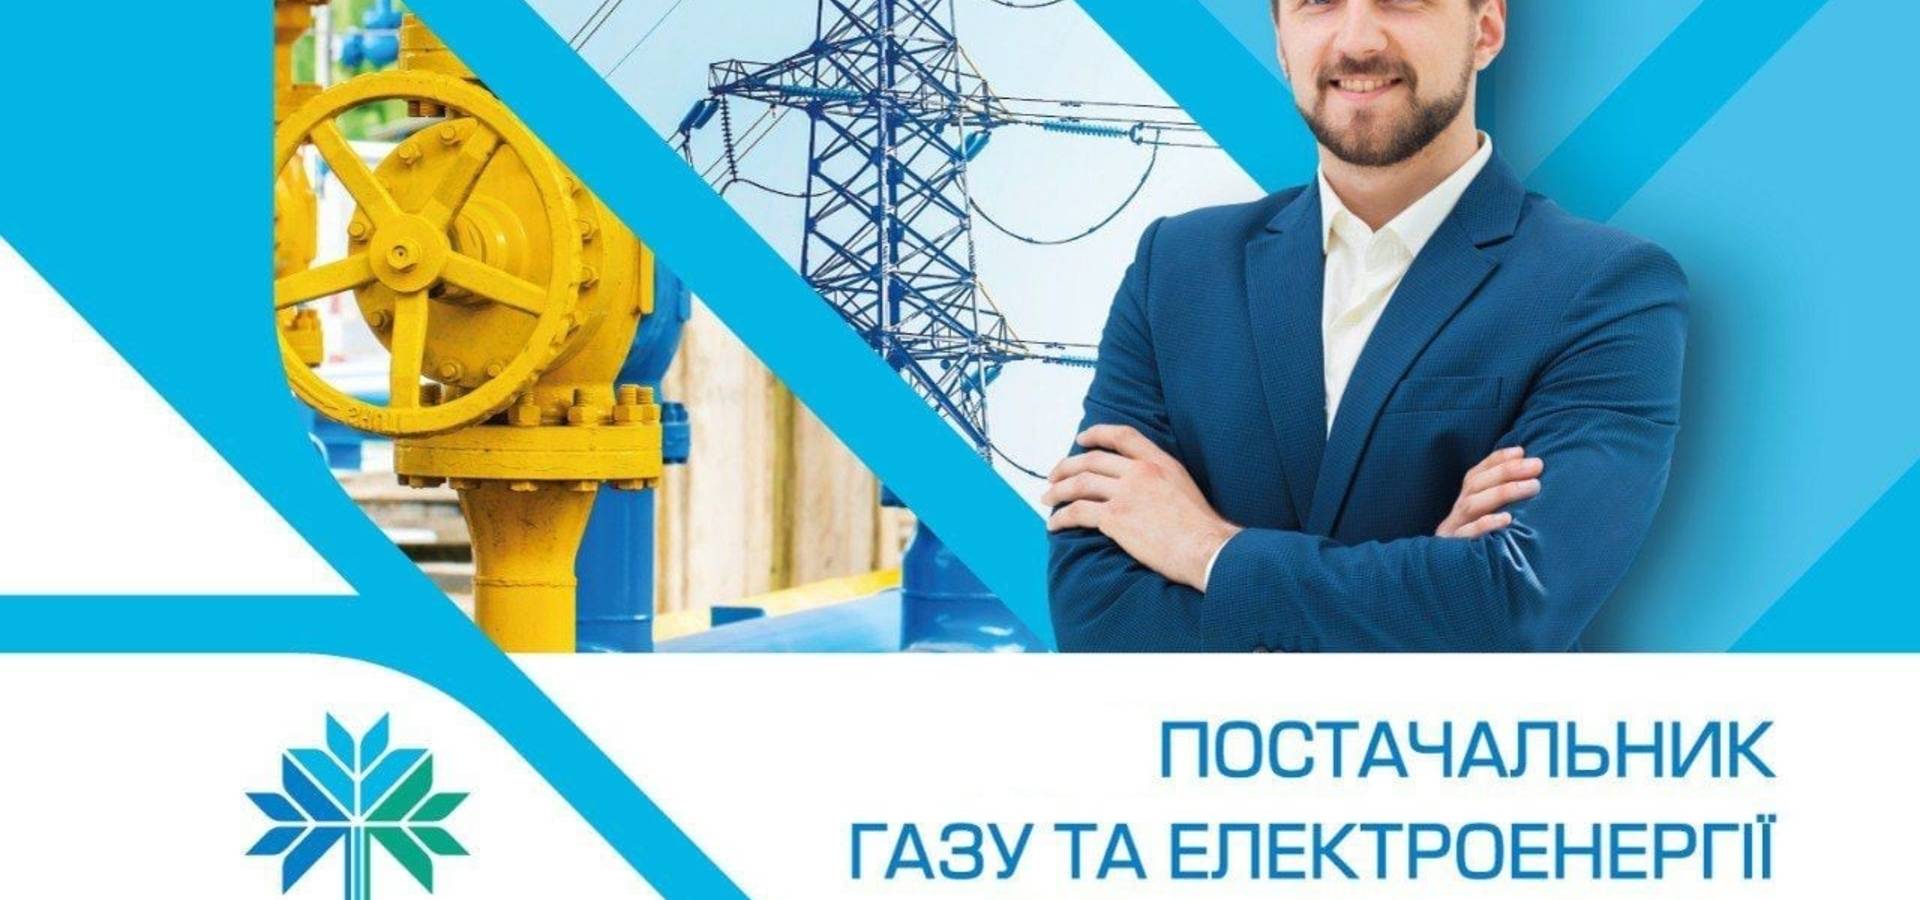 «Вінницягаз Збут» пропонує послуги з постачання електроенергії для бюджетних організацій